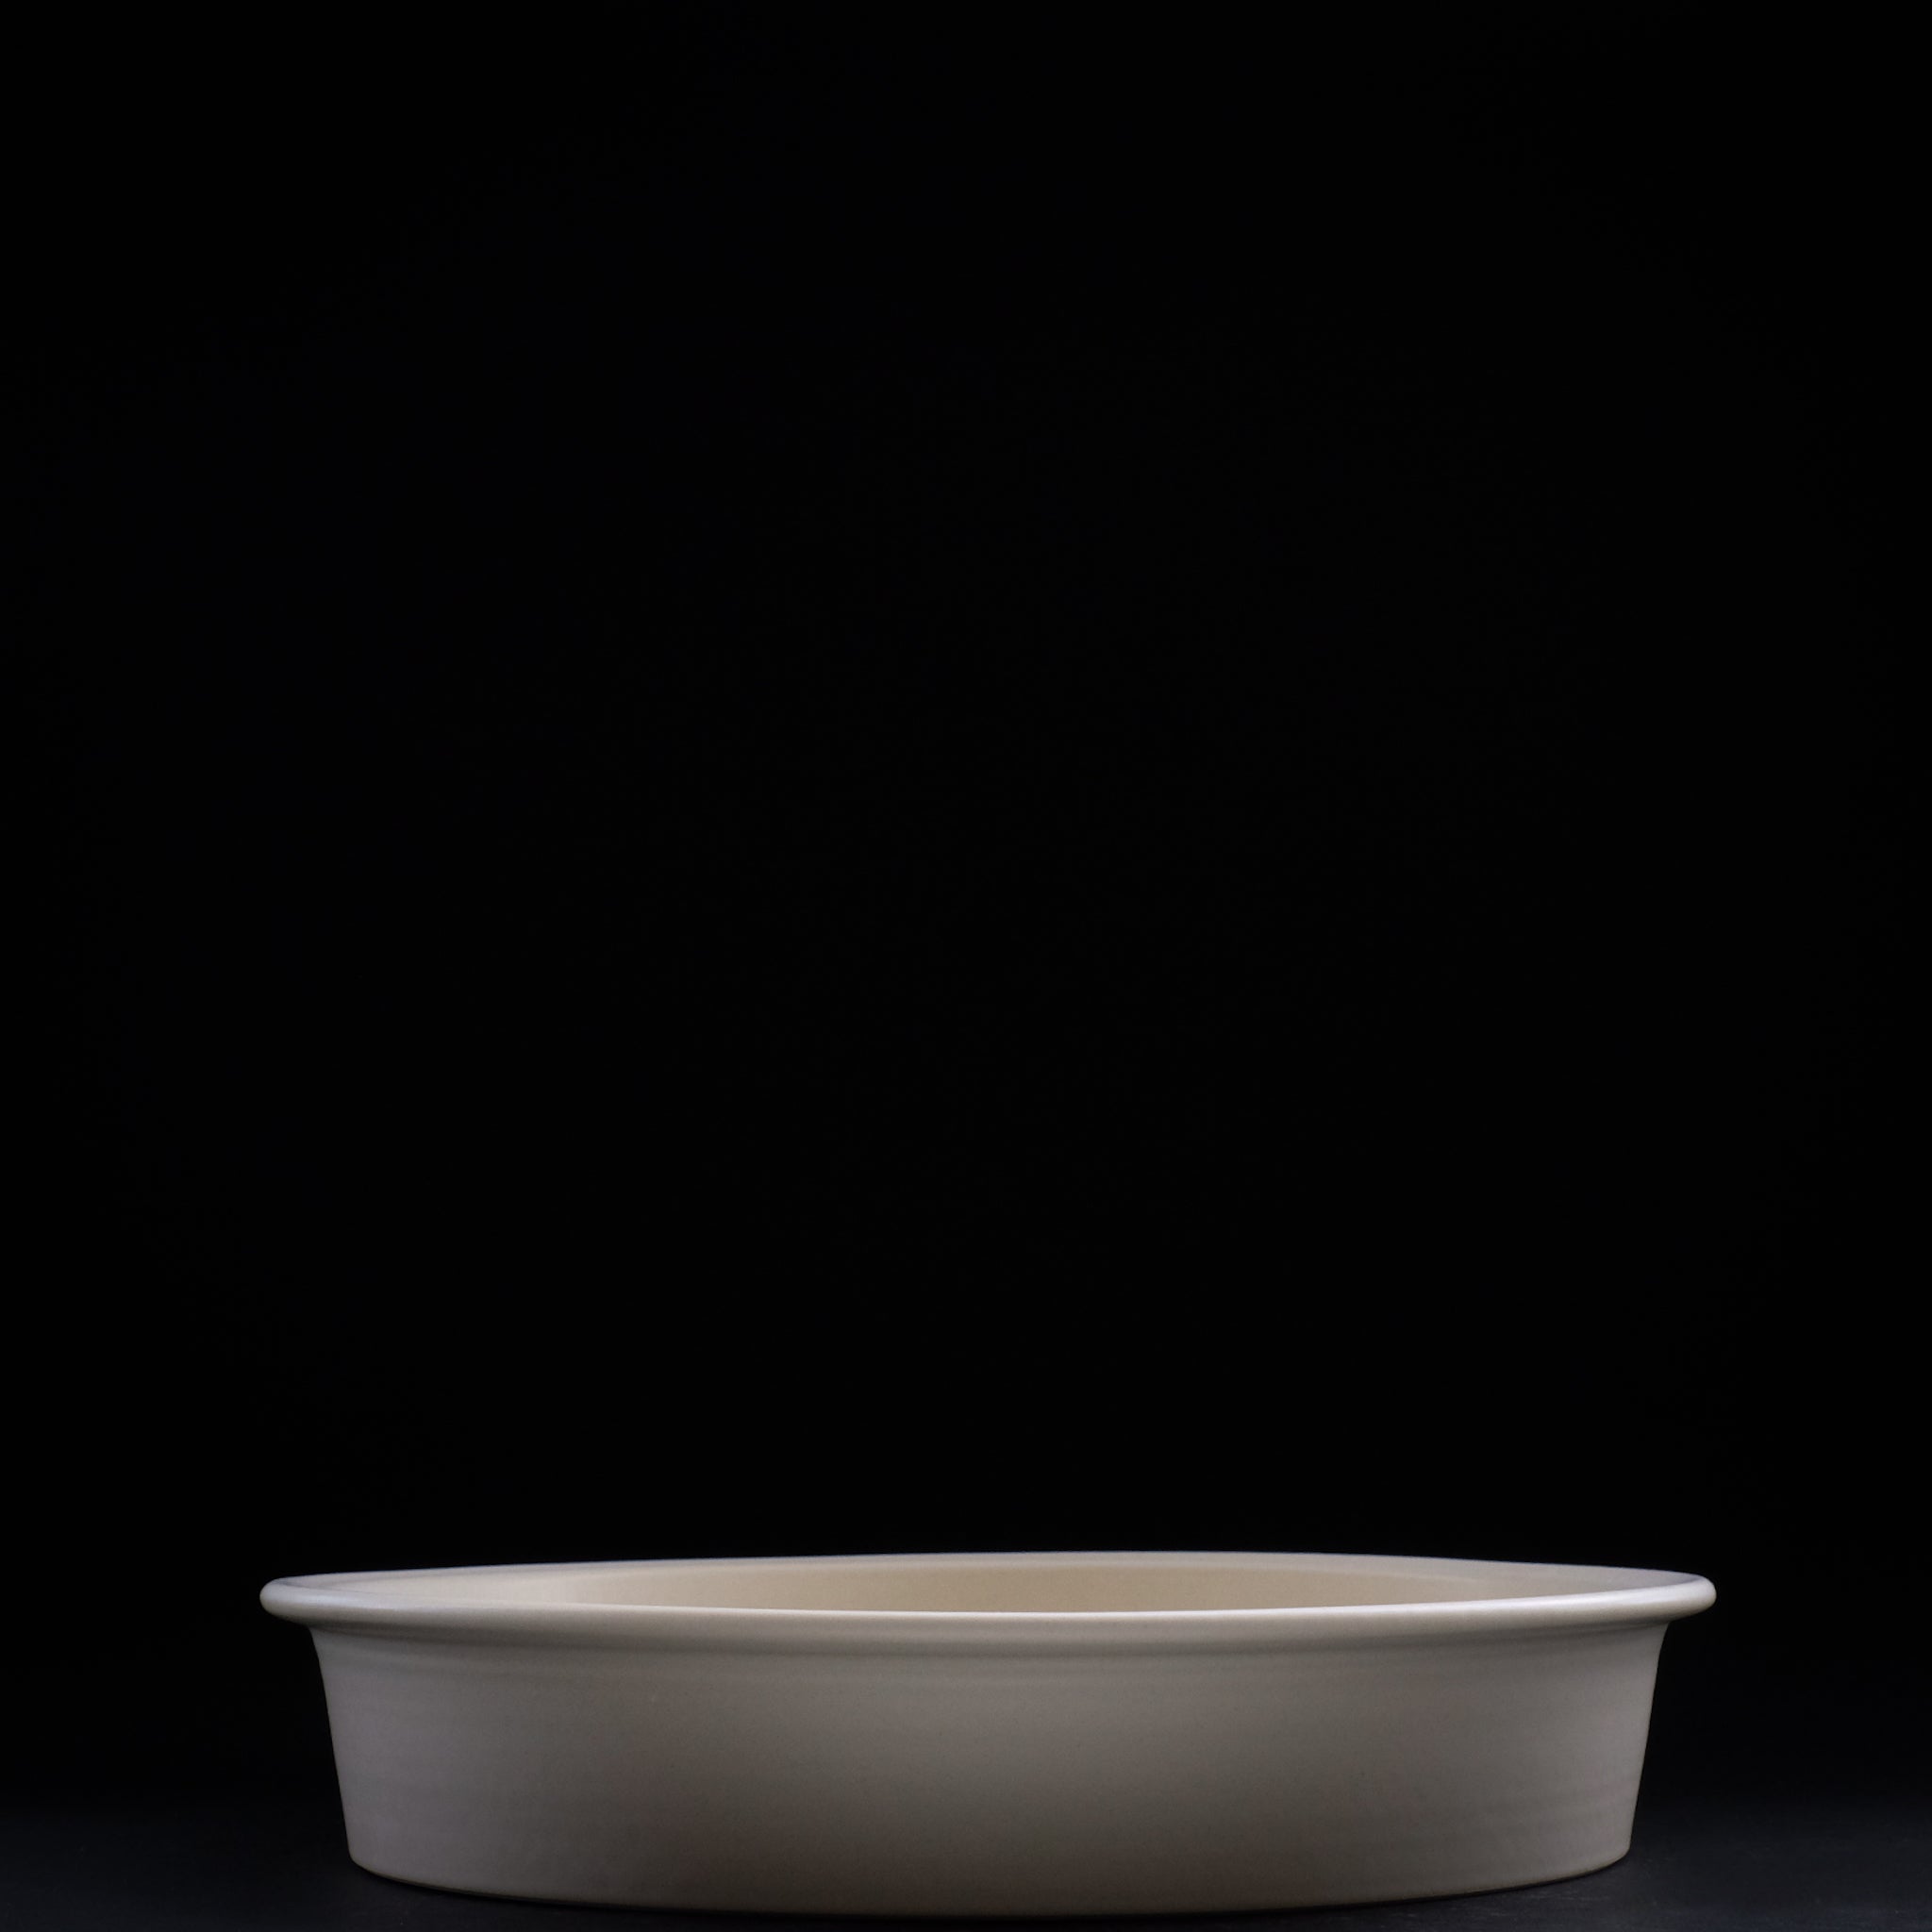 大谷製陶所 ( 大谷哲也 ) 平鍋 浅 φ24 cm    Otani Pottery Studio ( Tetsuya Otani ) Hiranabe earthenware pan  Shallow φ24 cm